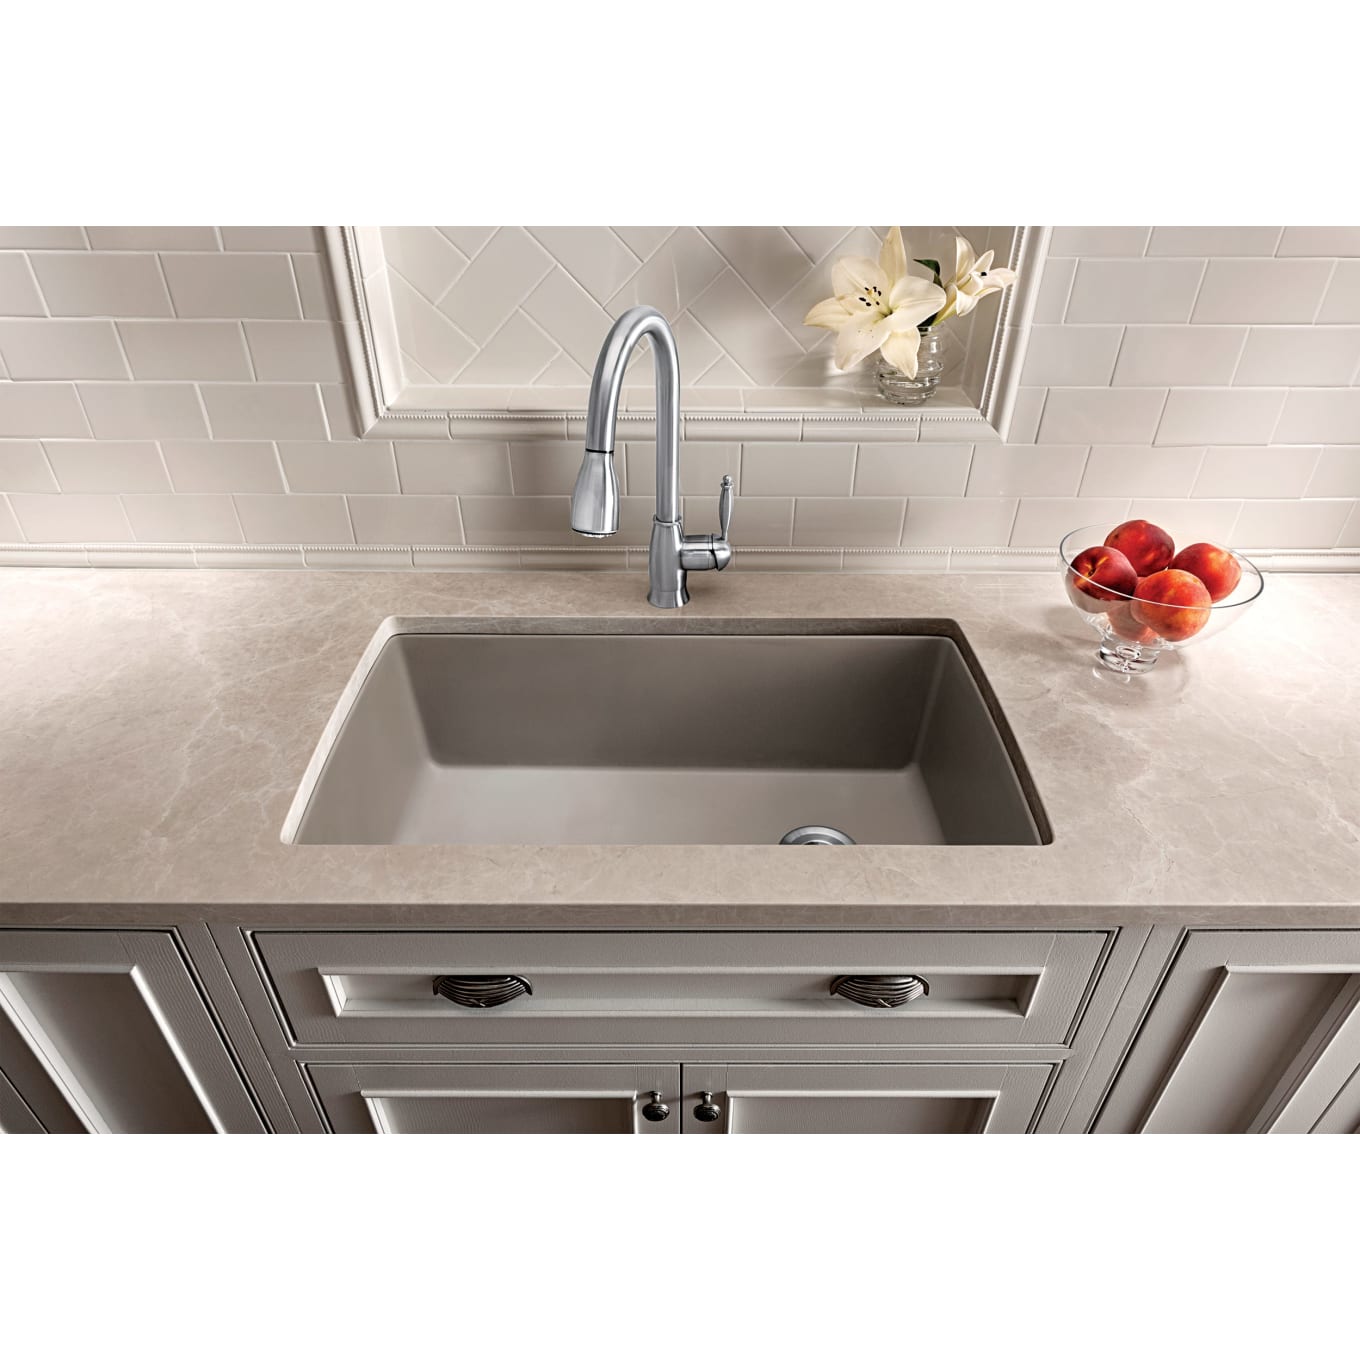 Luxury 33-Inch Undermount Kitchen Sink Online